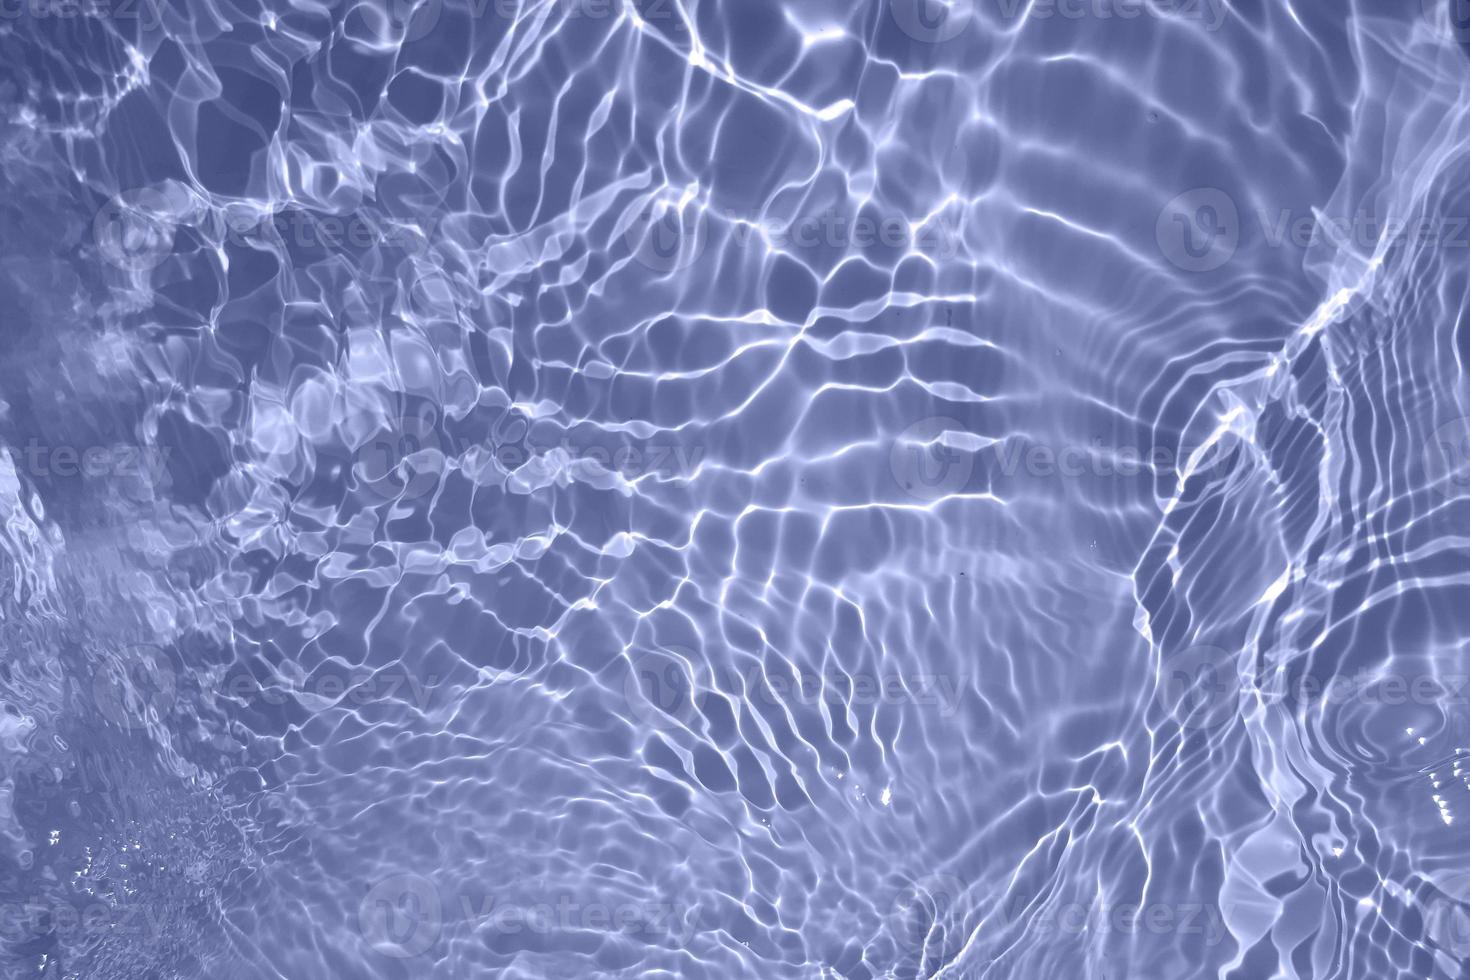 defocus verschwommene, transparente, blaue, klare, ruhige wasseroberflächenstruktur mit spritzern und blasen. trendiger abstrakter naturhintergrund. wasserwellen im sonnenlicht mit kopierraum. blaues aquarell glänzt foto